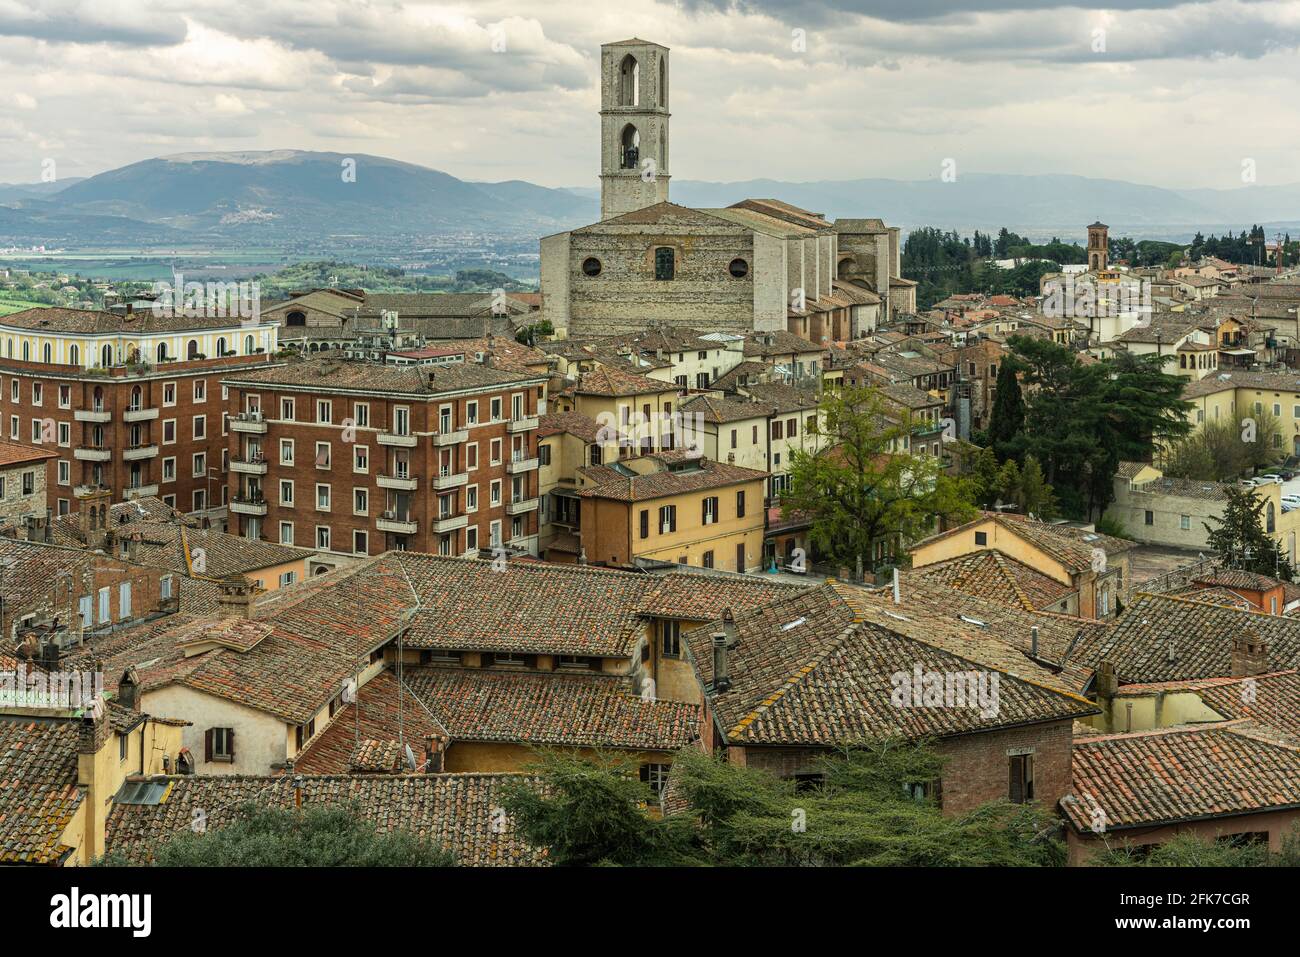 Stadtlandschaft der Stadt Perugia. Imposant ist das Kloster San Domenico mit seinem romanischen Glockenturm. Perugia, Umbrien, Italien, Europa Stockfoto